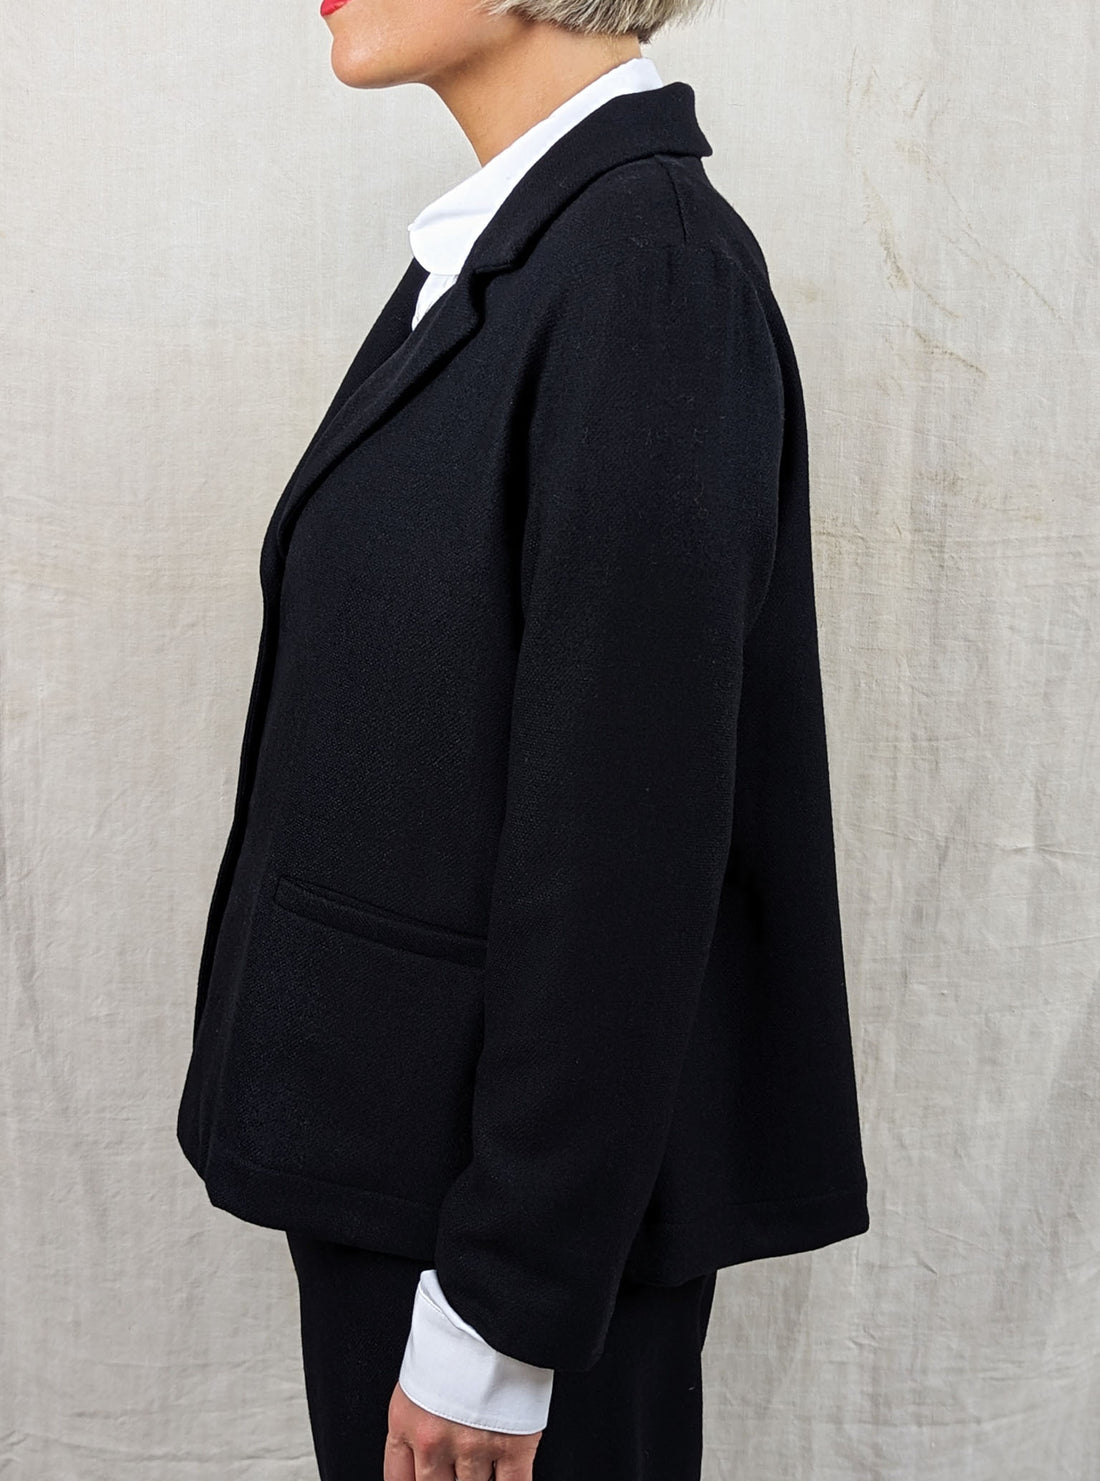 NEIRAMI Black Woollen Jacket